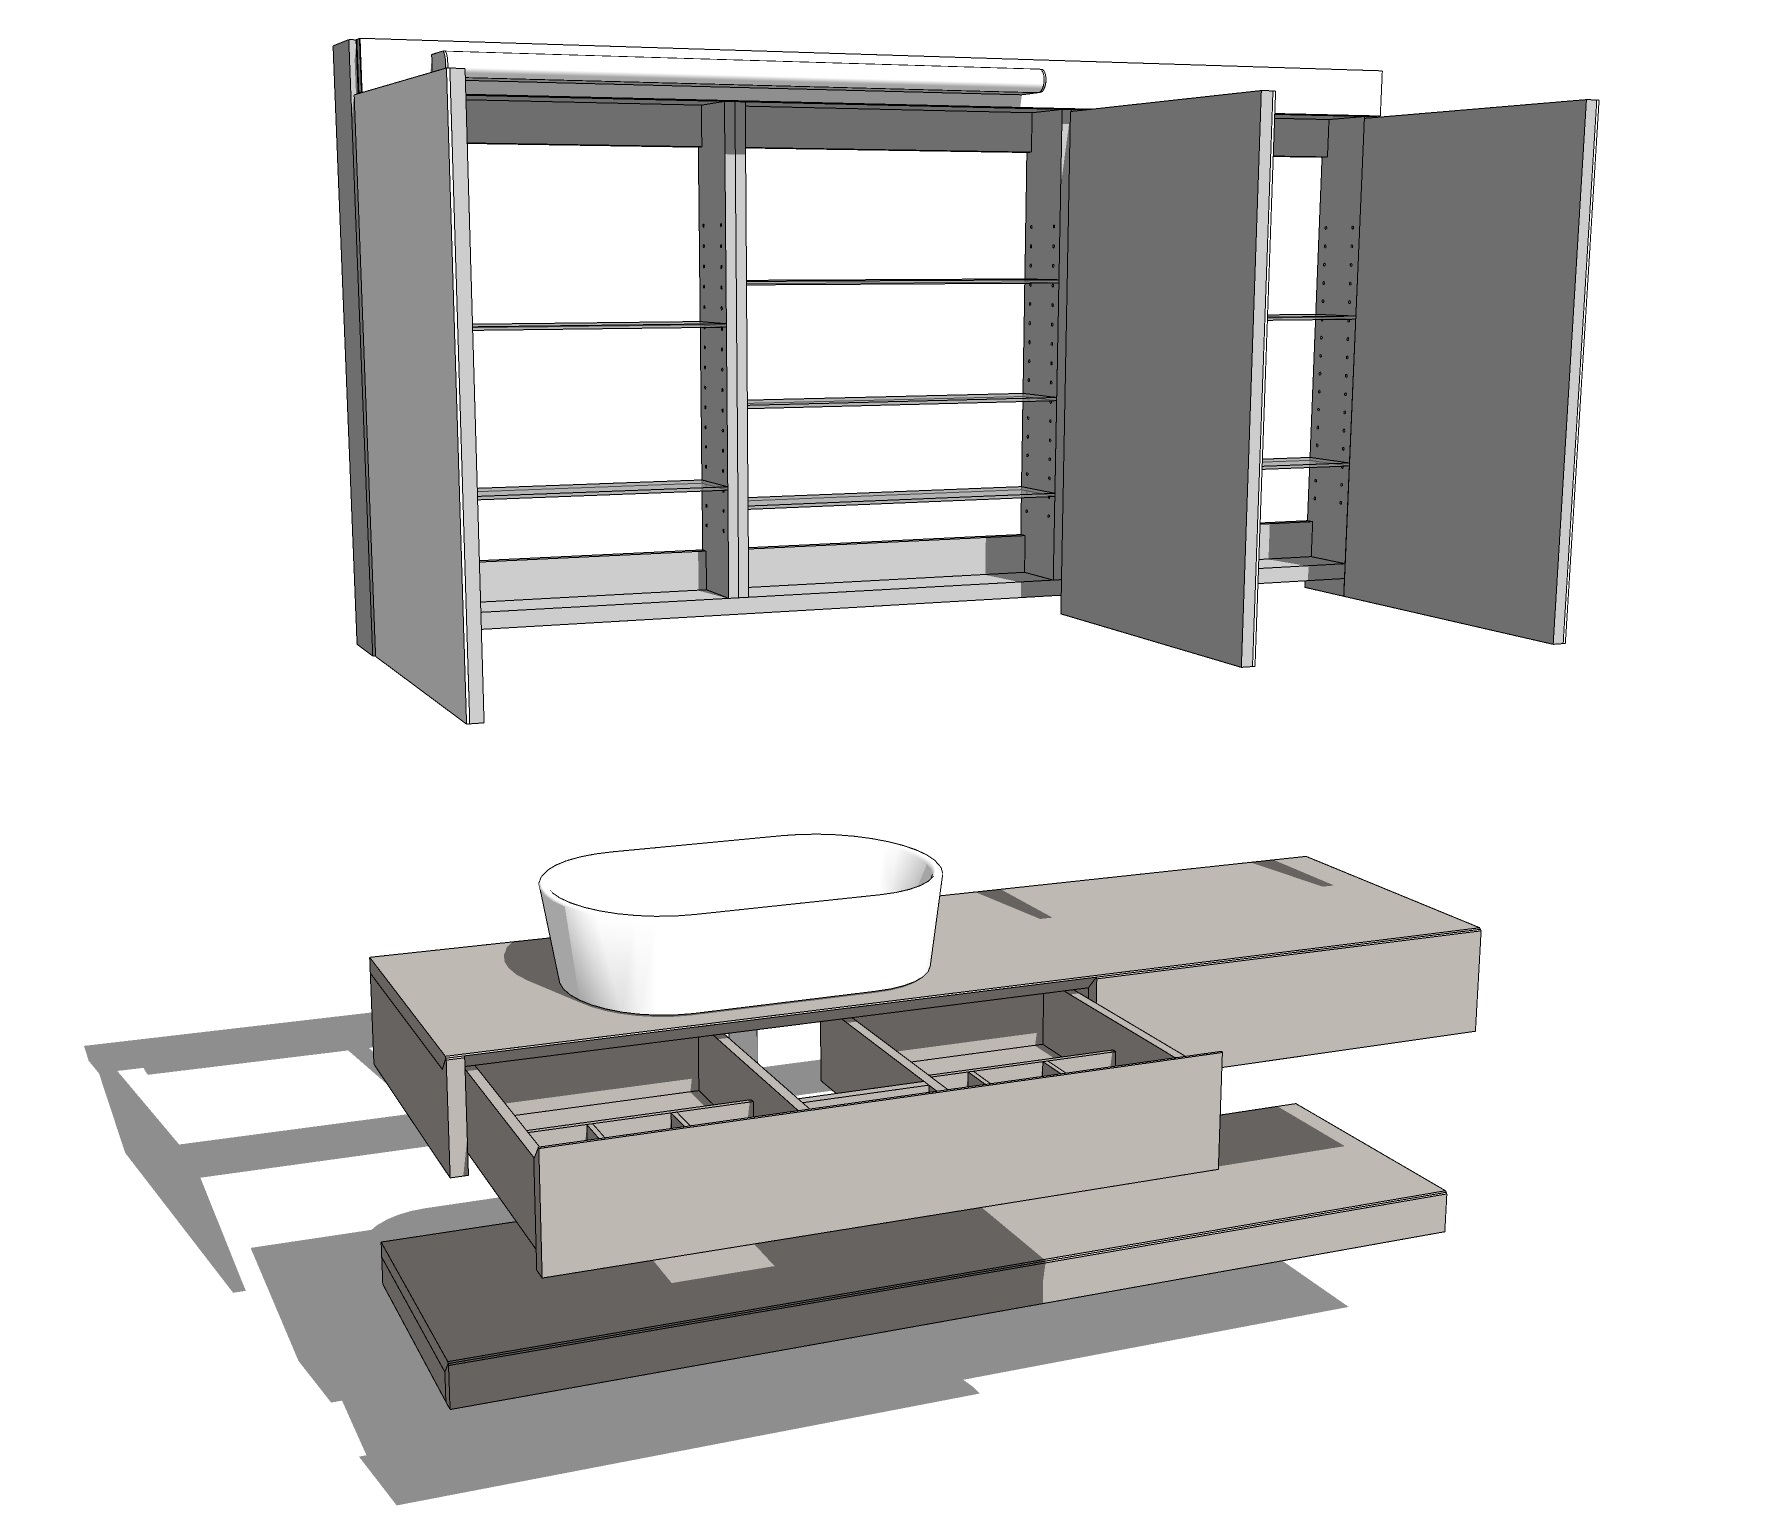 Furniture-design-furniture-14